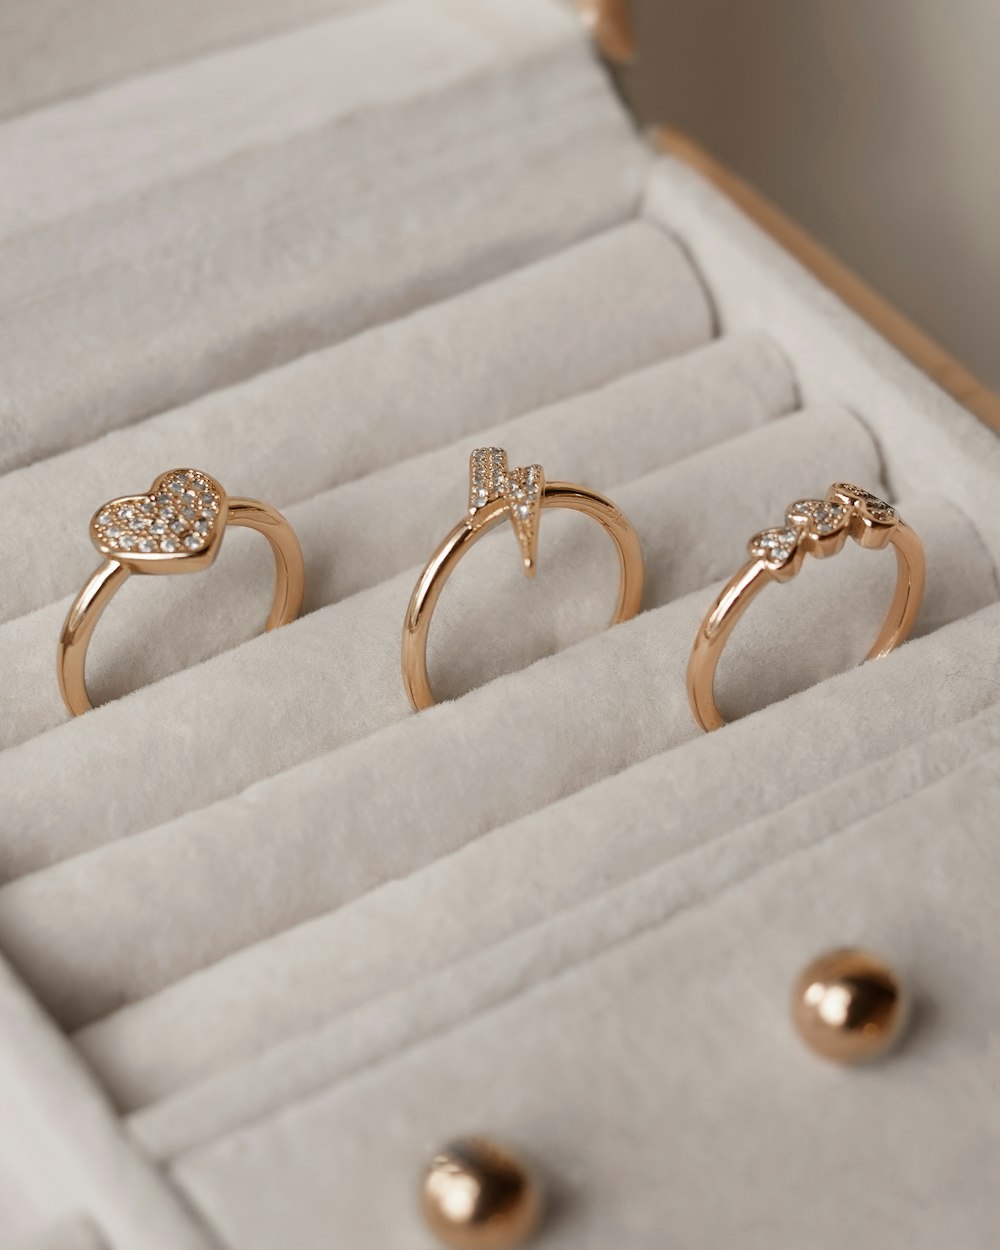 Tres anillos de oro en una caja blanca